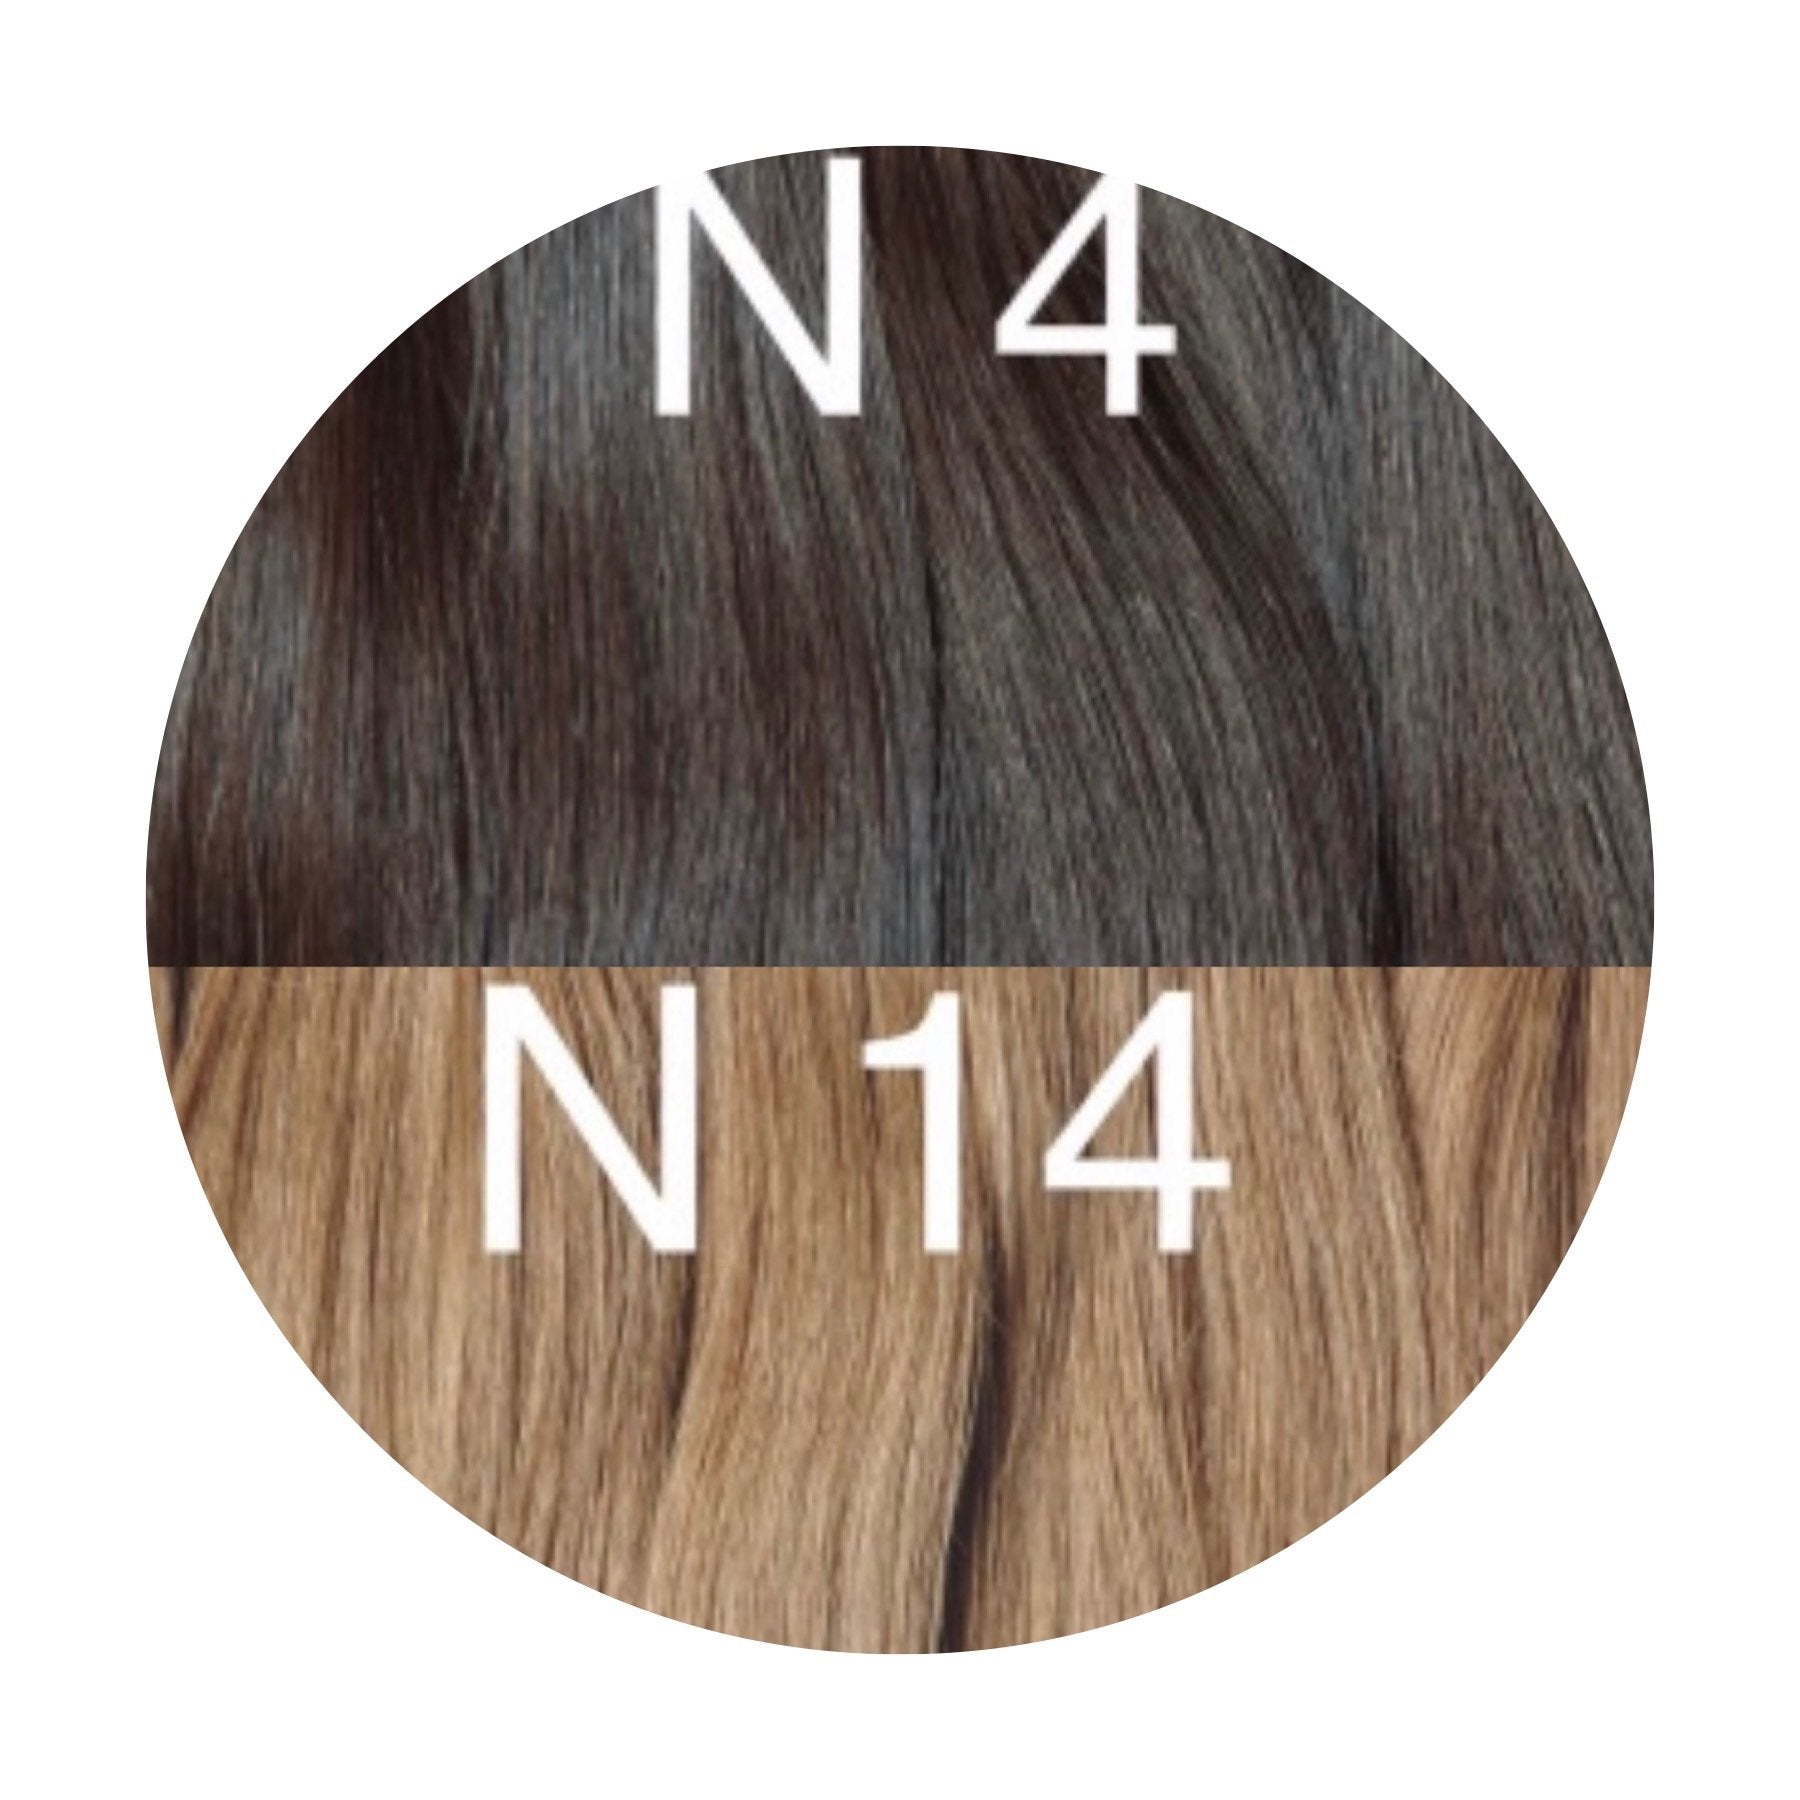 Micro links ombre 4 and 14 Color GVA hair - GVA hair